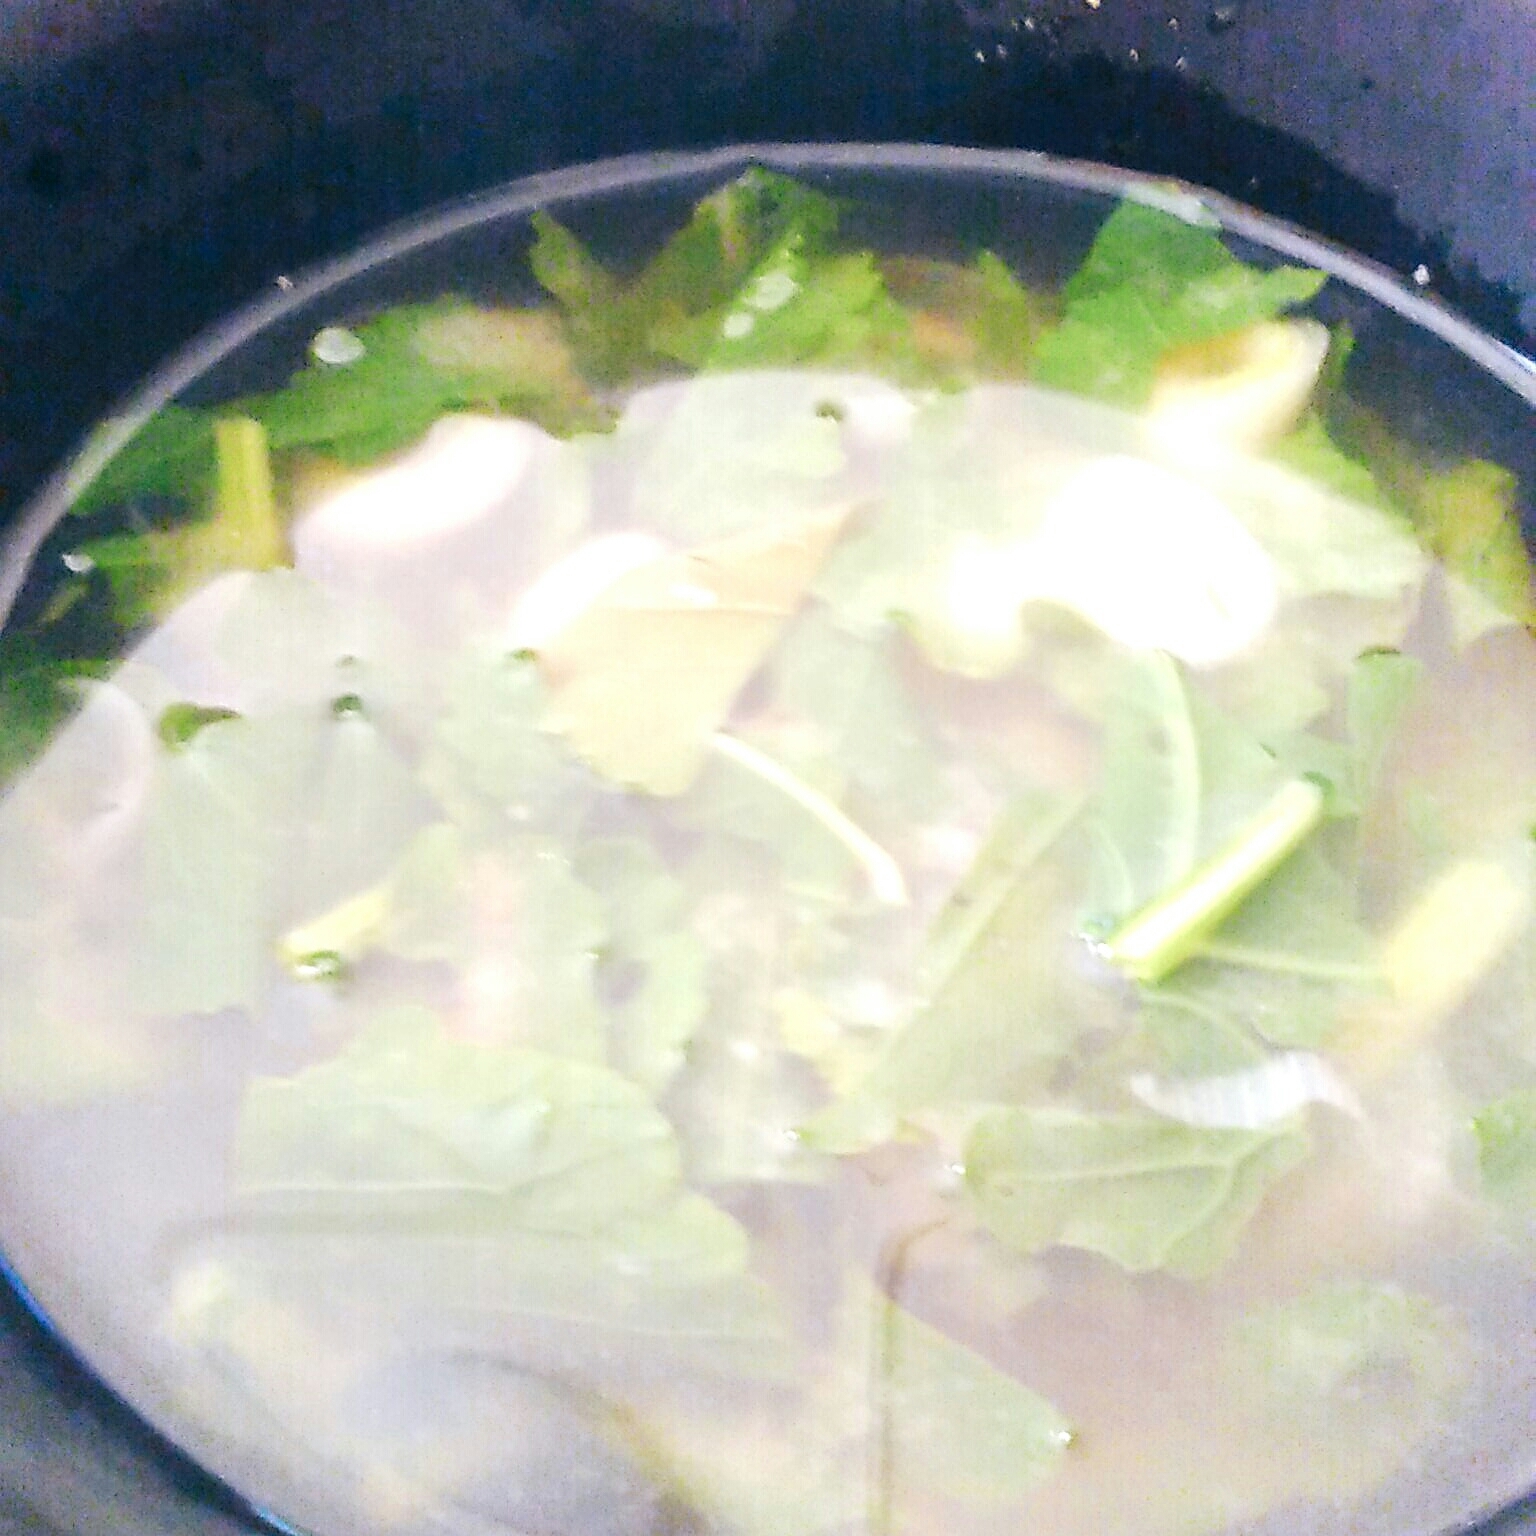 大根葉の豆腐椎茸の味噌汁